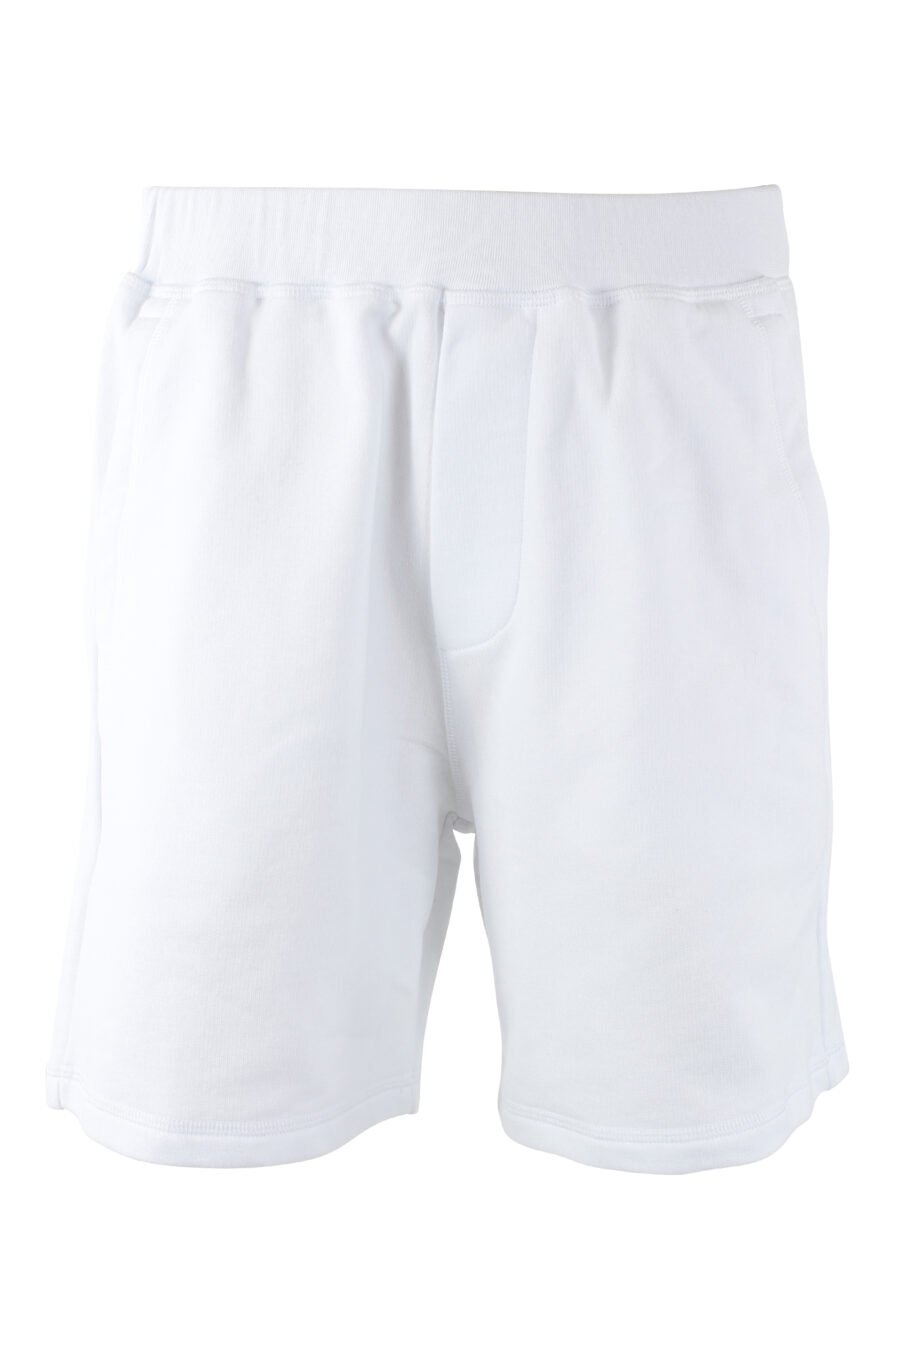 Pantalón de chándal blanco corto "relax fit" - IMG 9719